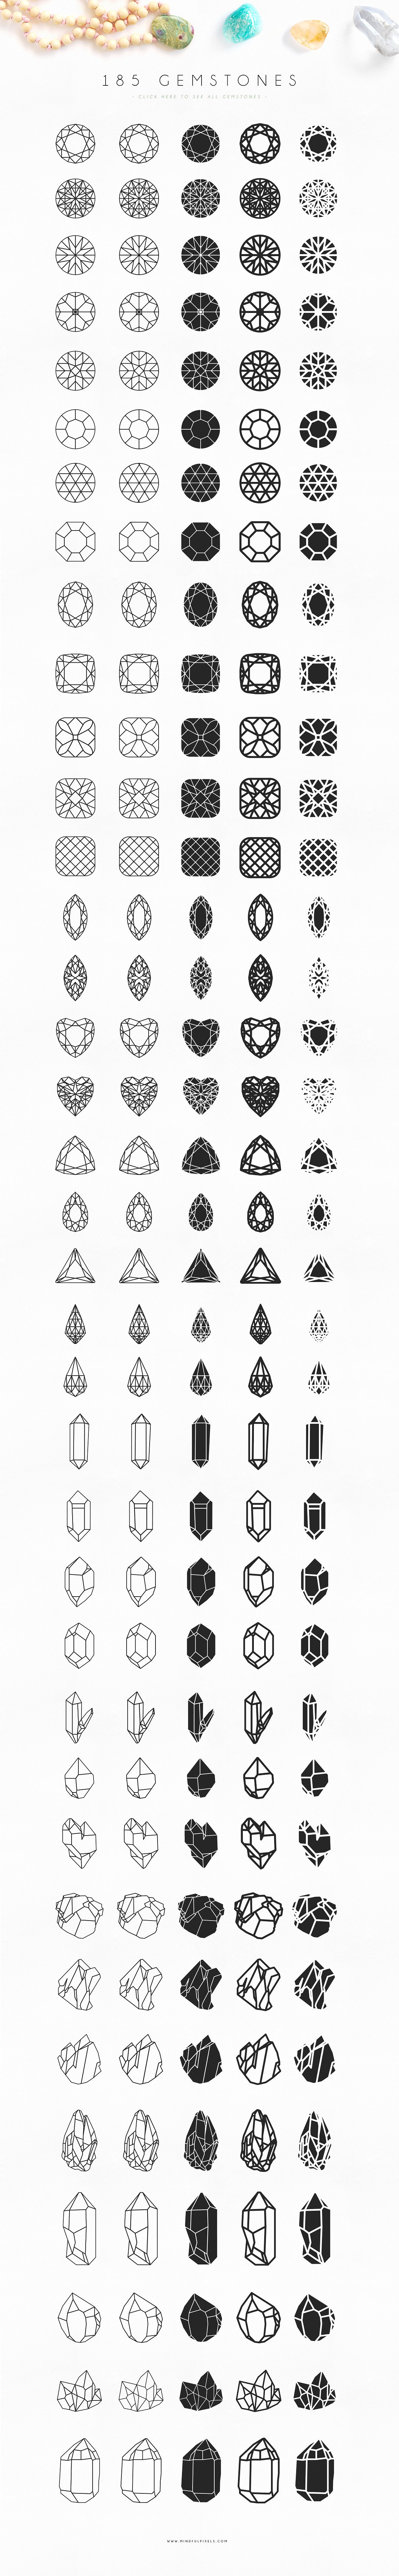 185颗完美的宝石矢量素材下载[eps,png]插图(4)